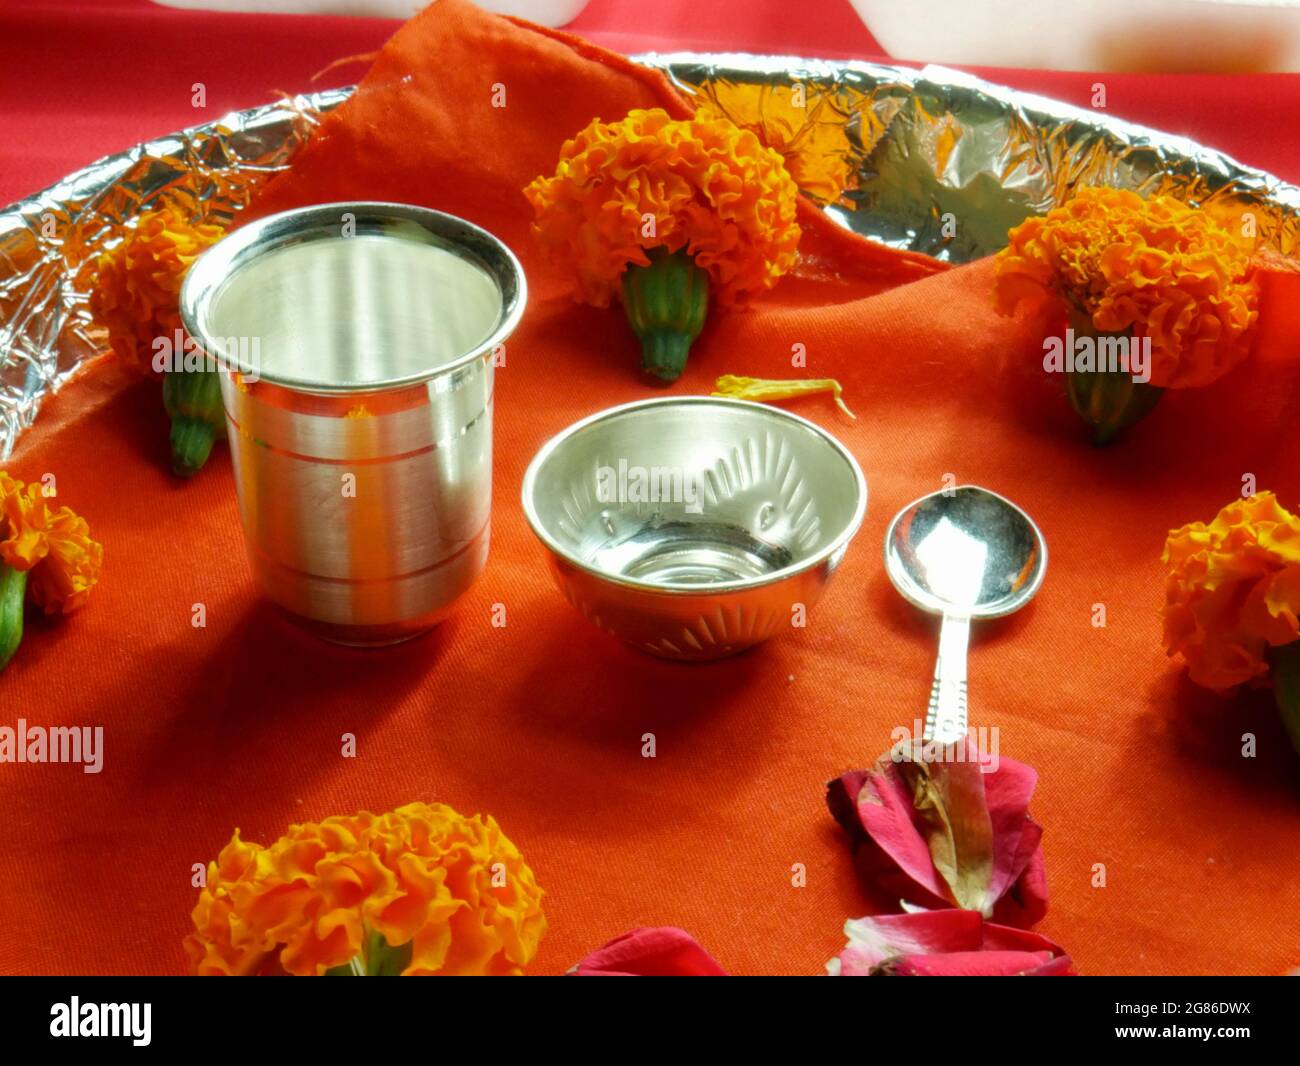 Indische traditionelle Anbetung Silbermetallglas und Löffel religiöse  Besteck mit Ringelblumen auf Deep Safran Stoff präsentiert Stockfotografie  - Alamy